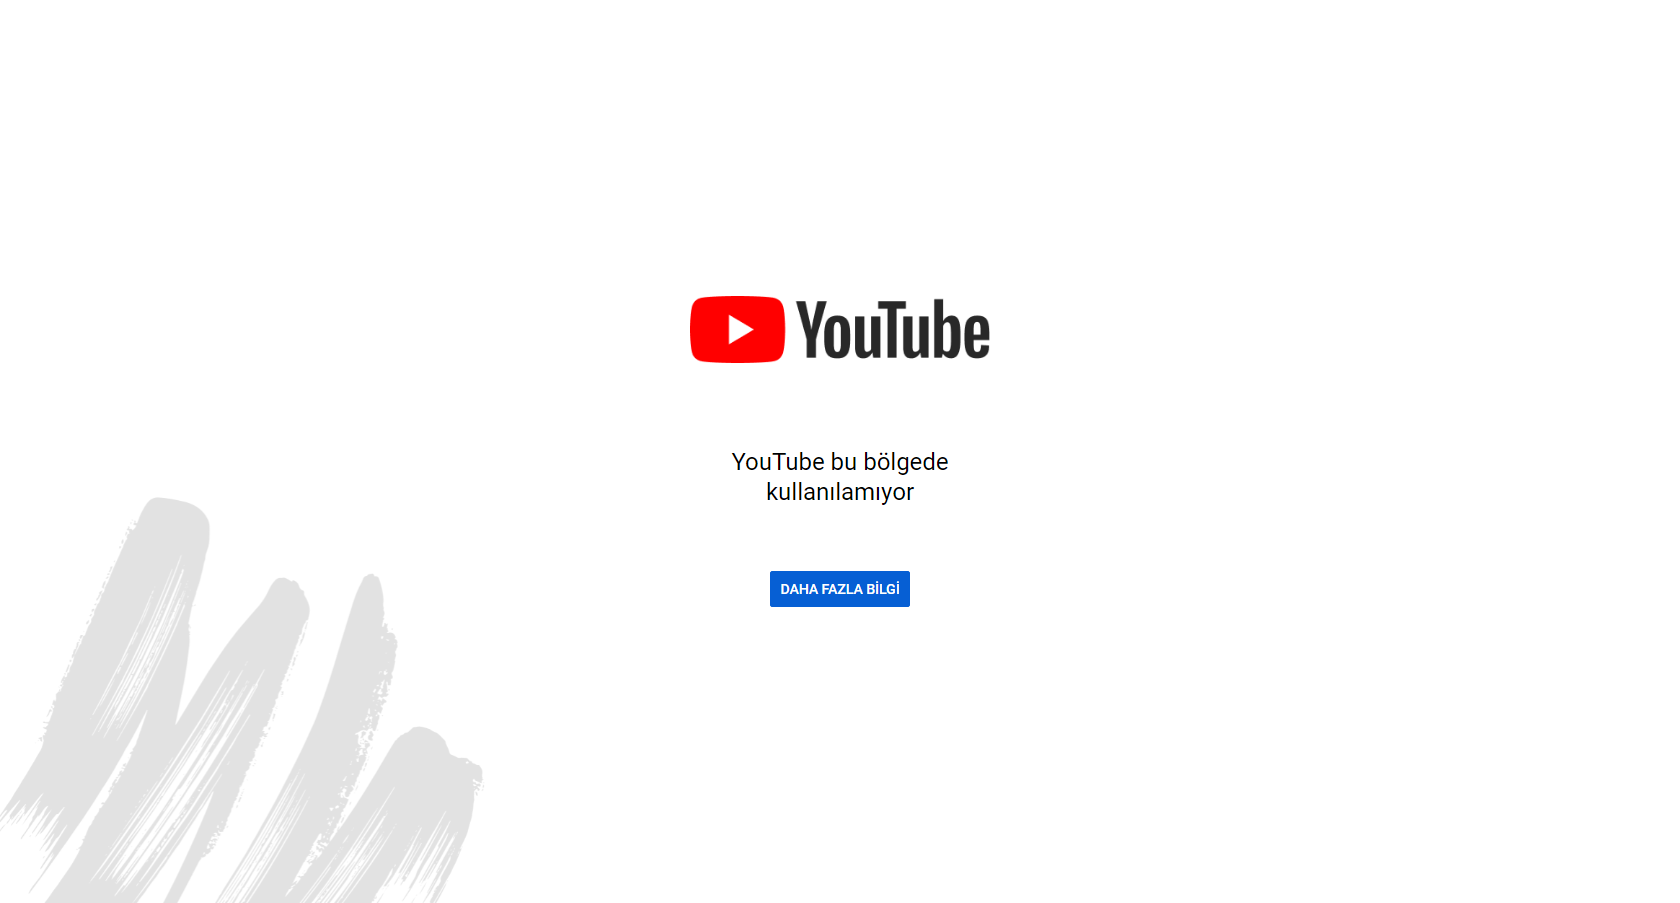 Youtube bu bölgede kullanılamıyor